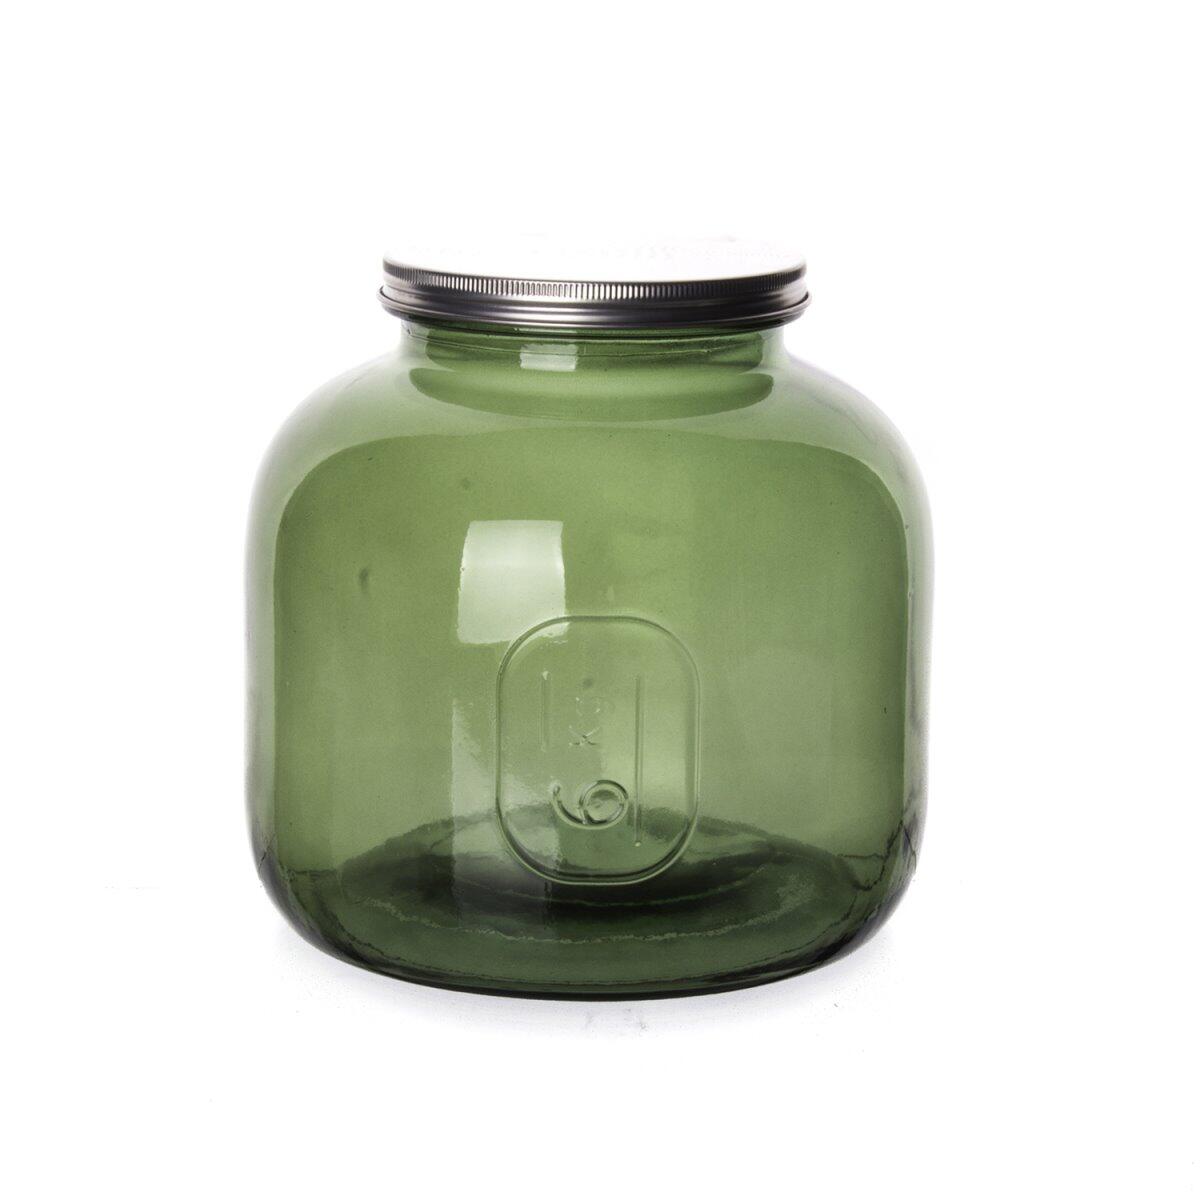 Sanmiguel Metal Jar with Lid 6 Liters